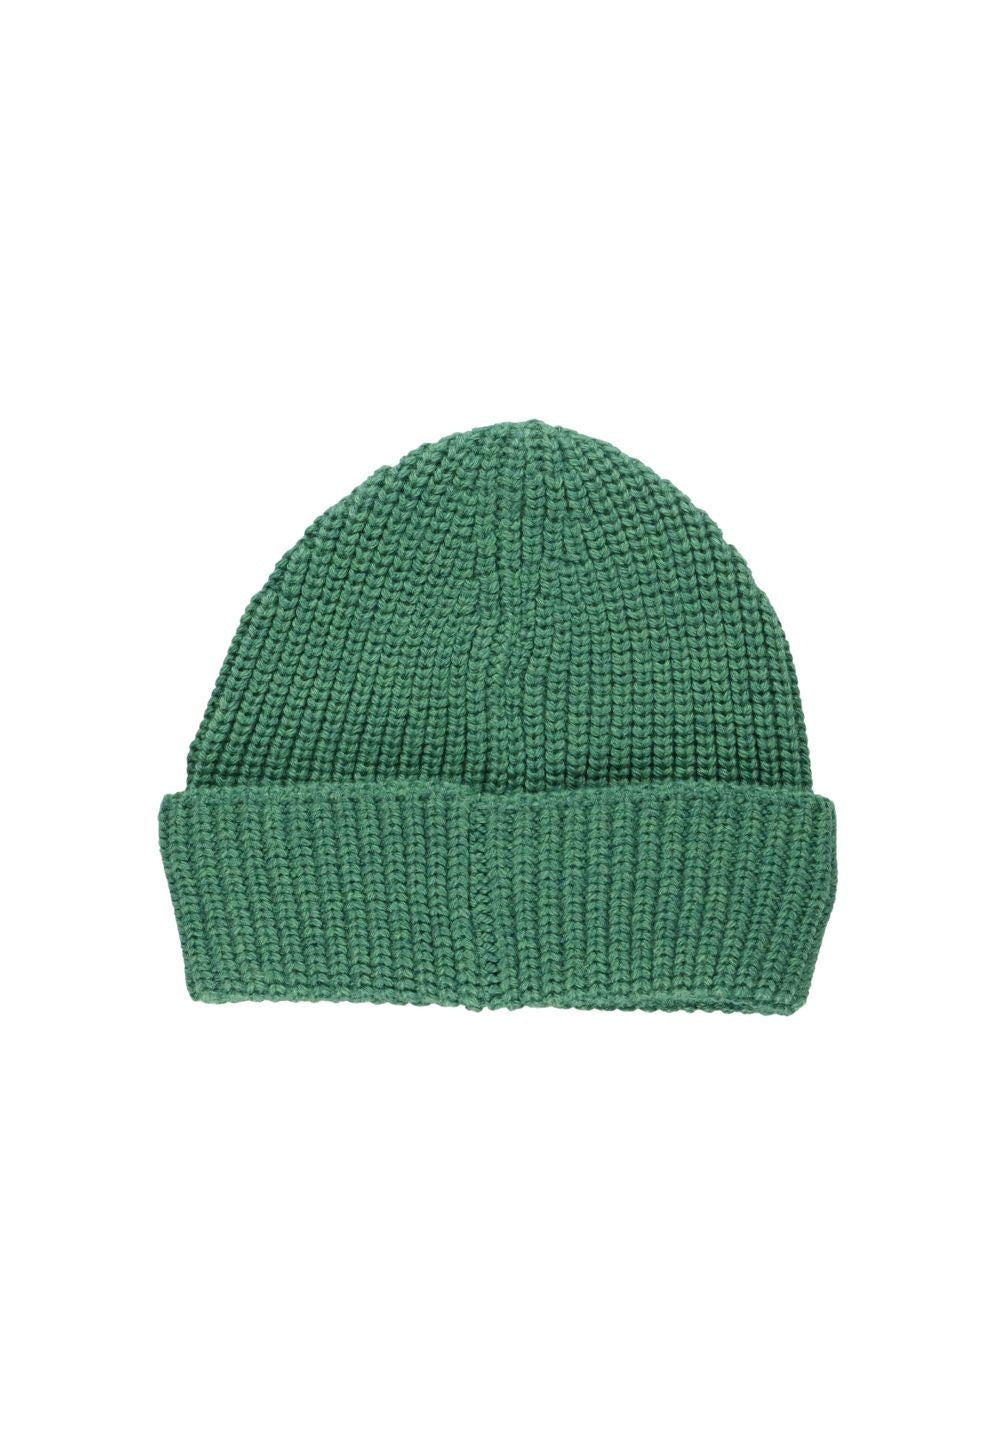 Grüner Hut für Kinder